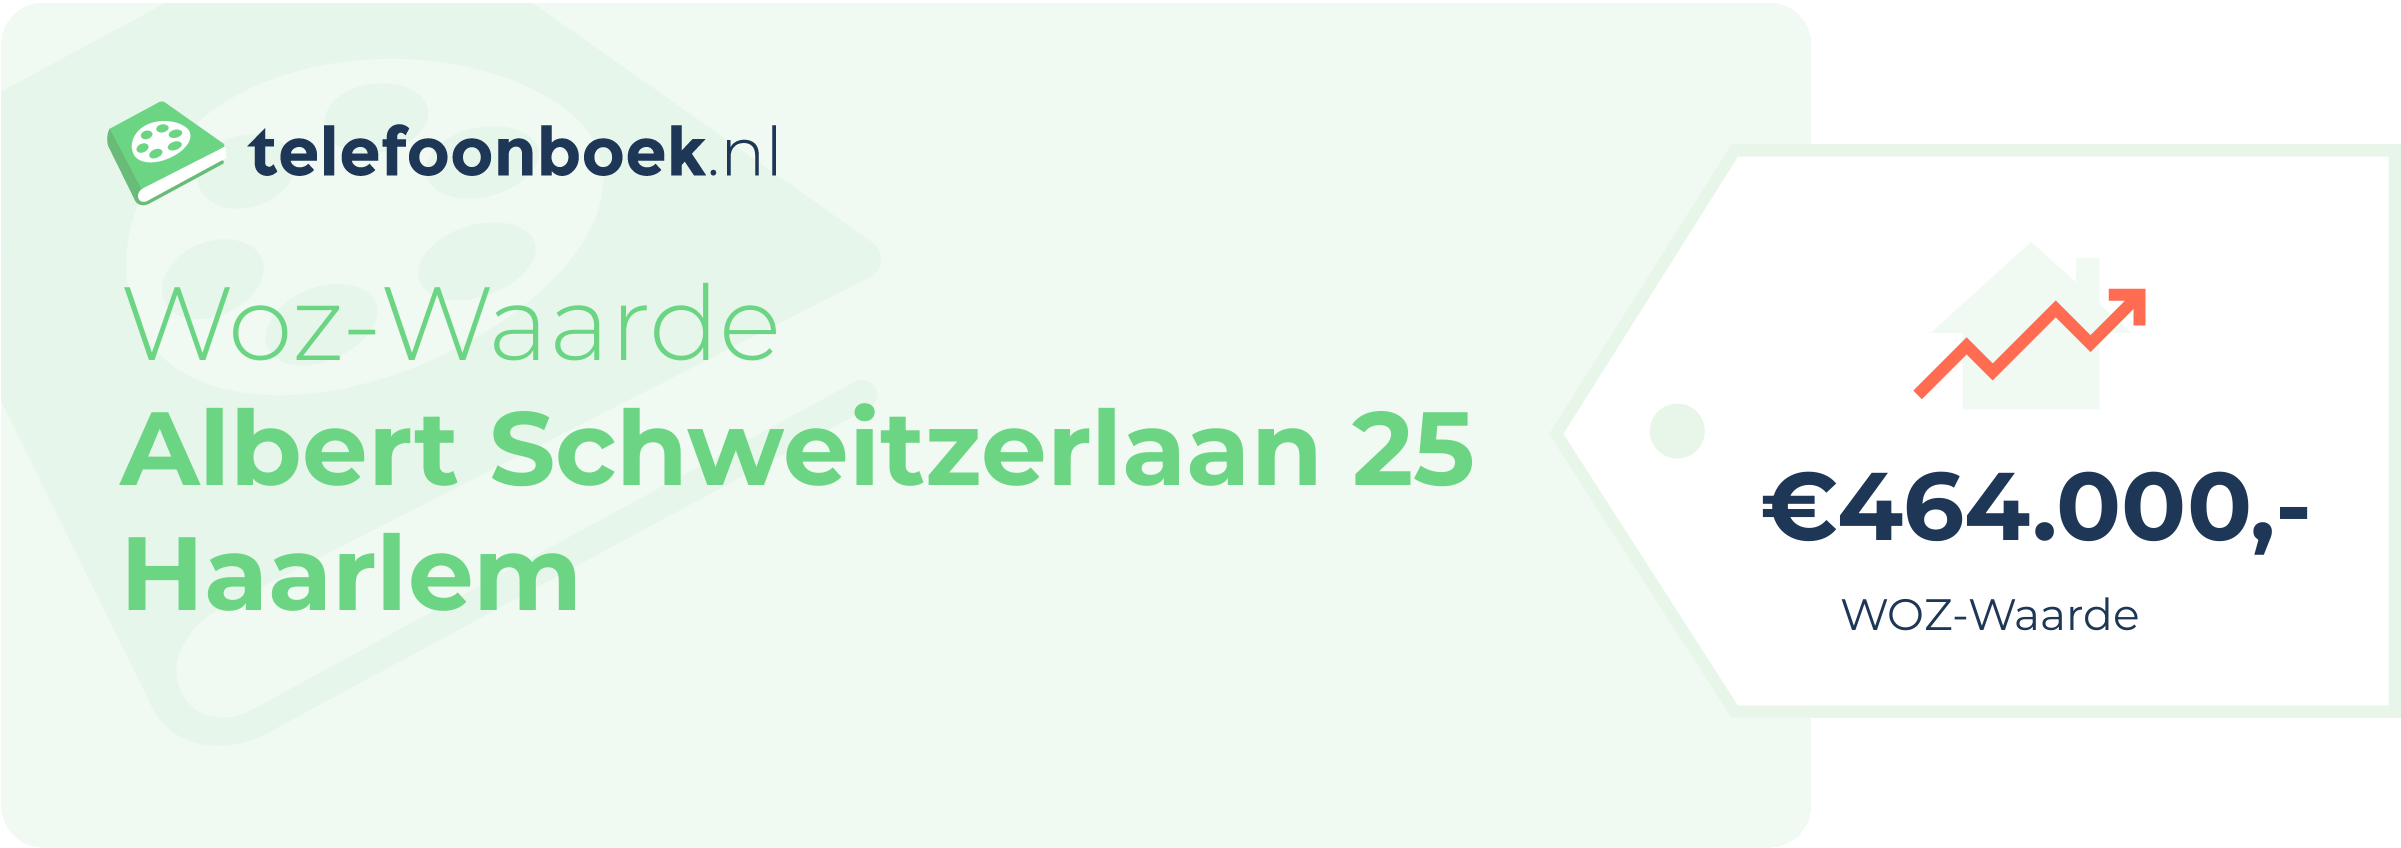 WOZ-waarde Albert Schweitzerlaan 25 Haarlem